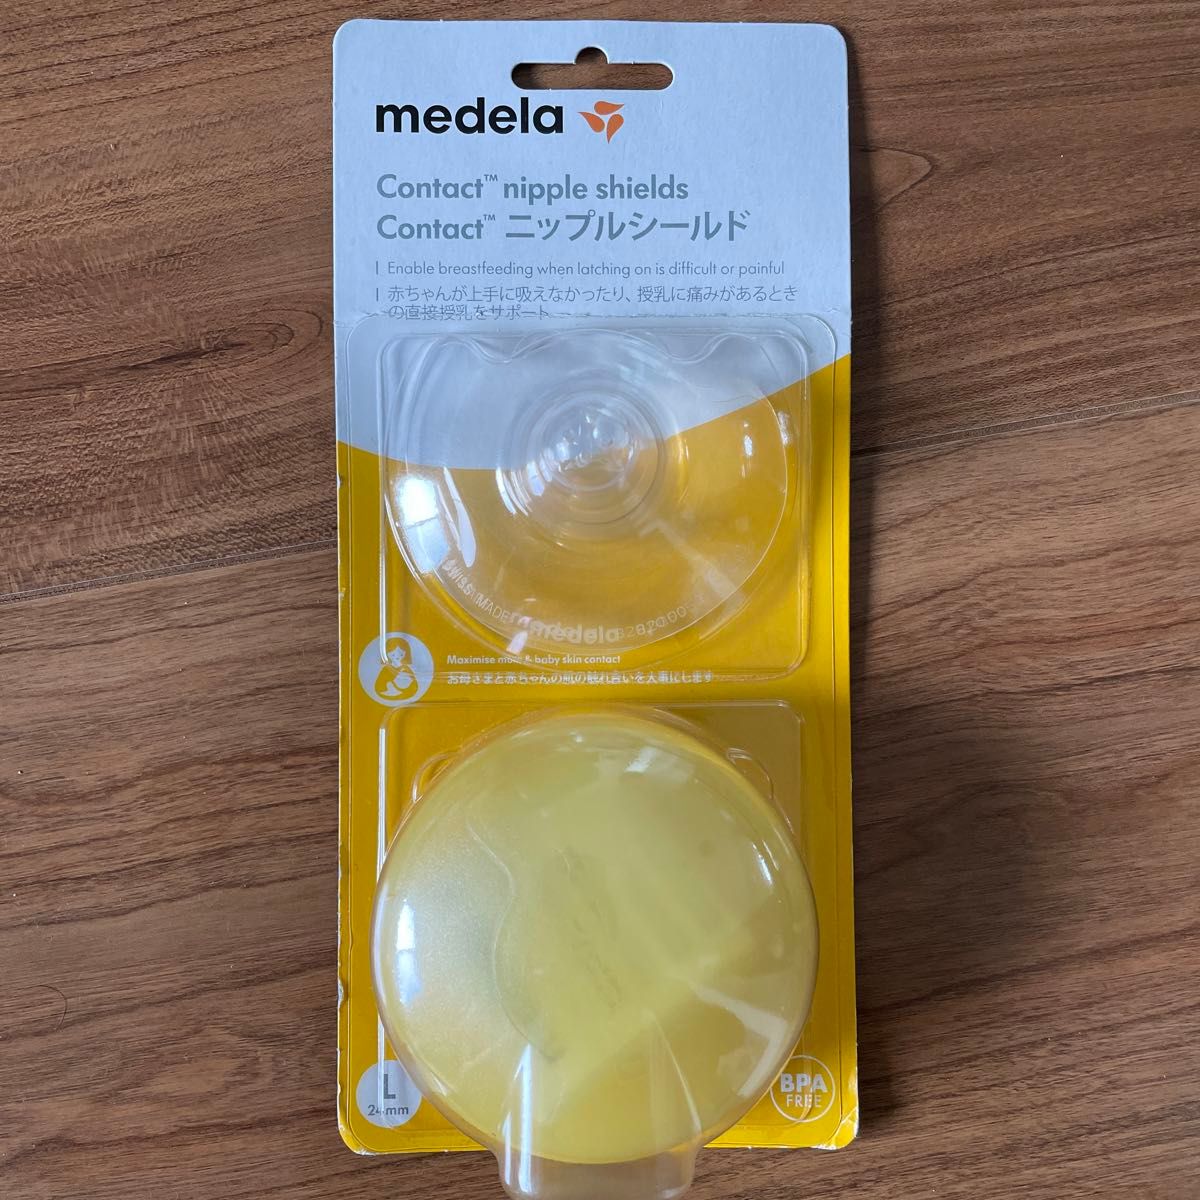 メデラ 乳頭保護器 コンタクトニップルシールド Lサイズ 24mm